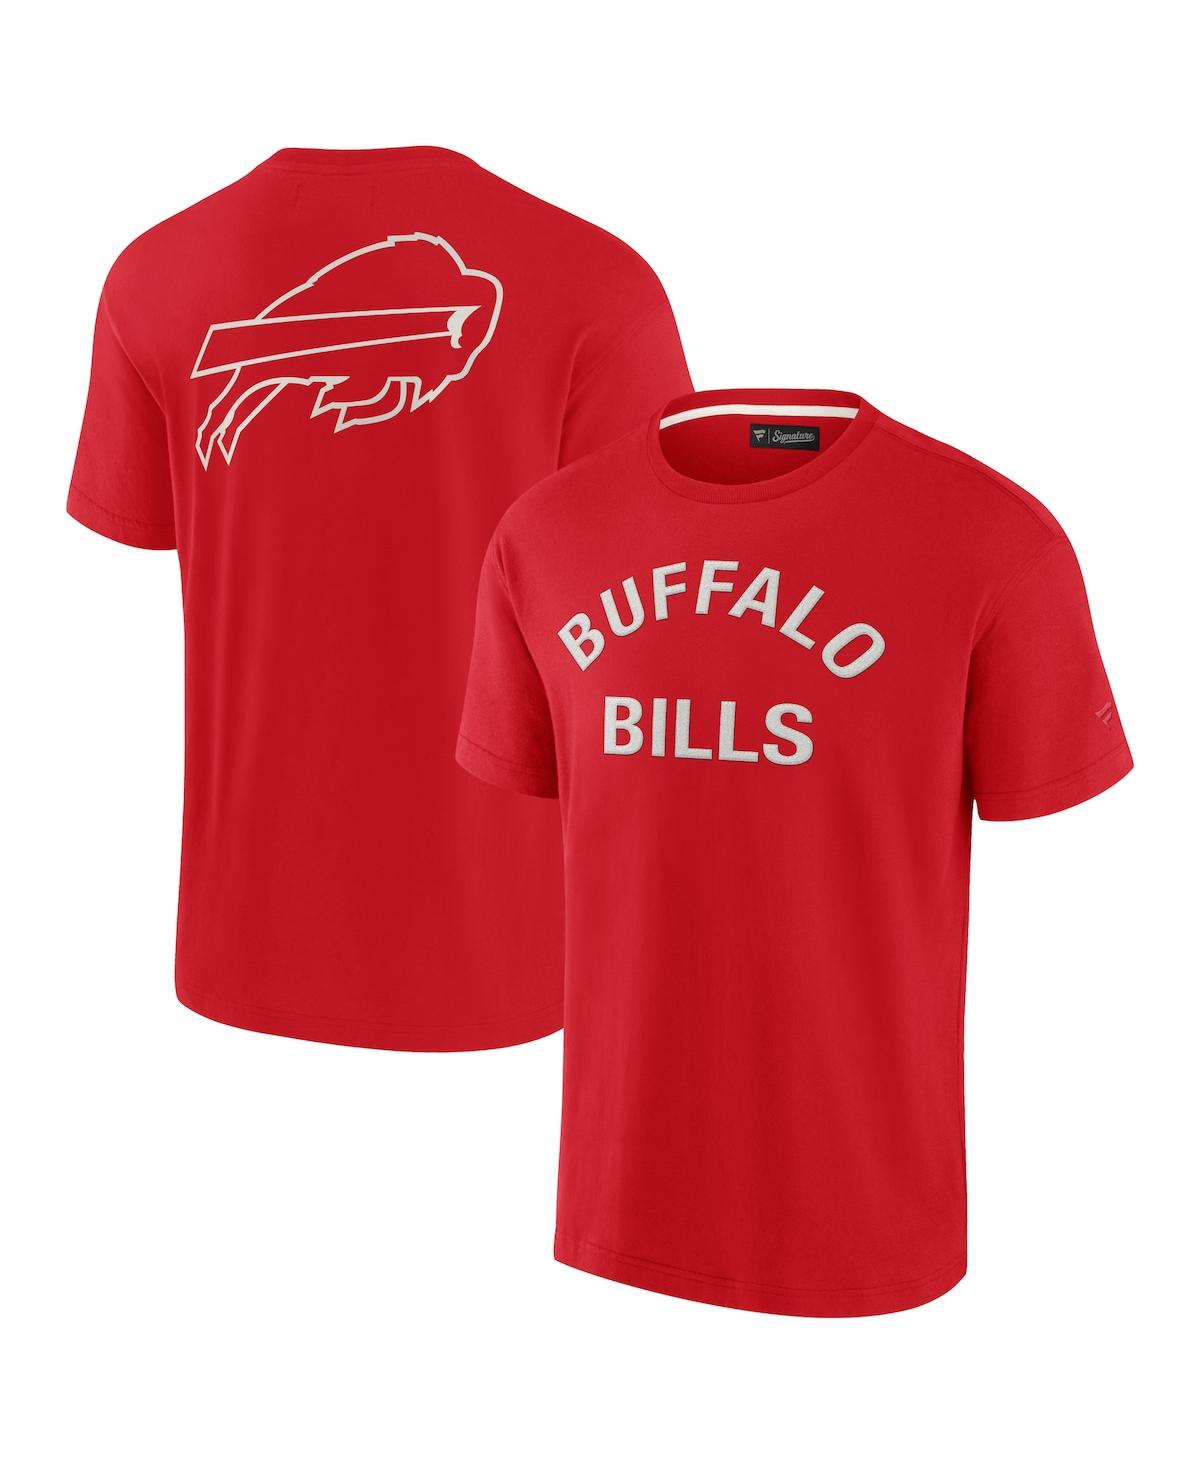 Men's and Women's Fanatics Signature Red Buffalo Bills Super Soft Short Sleeve T-shirt - Red